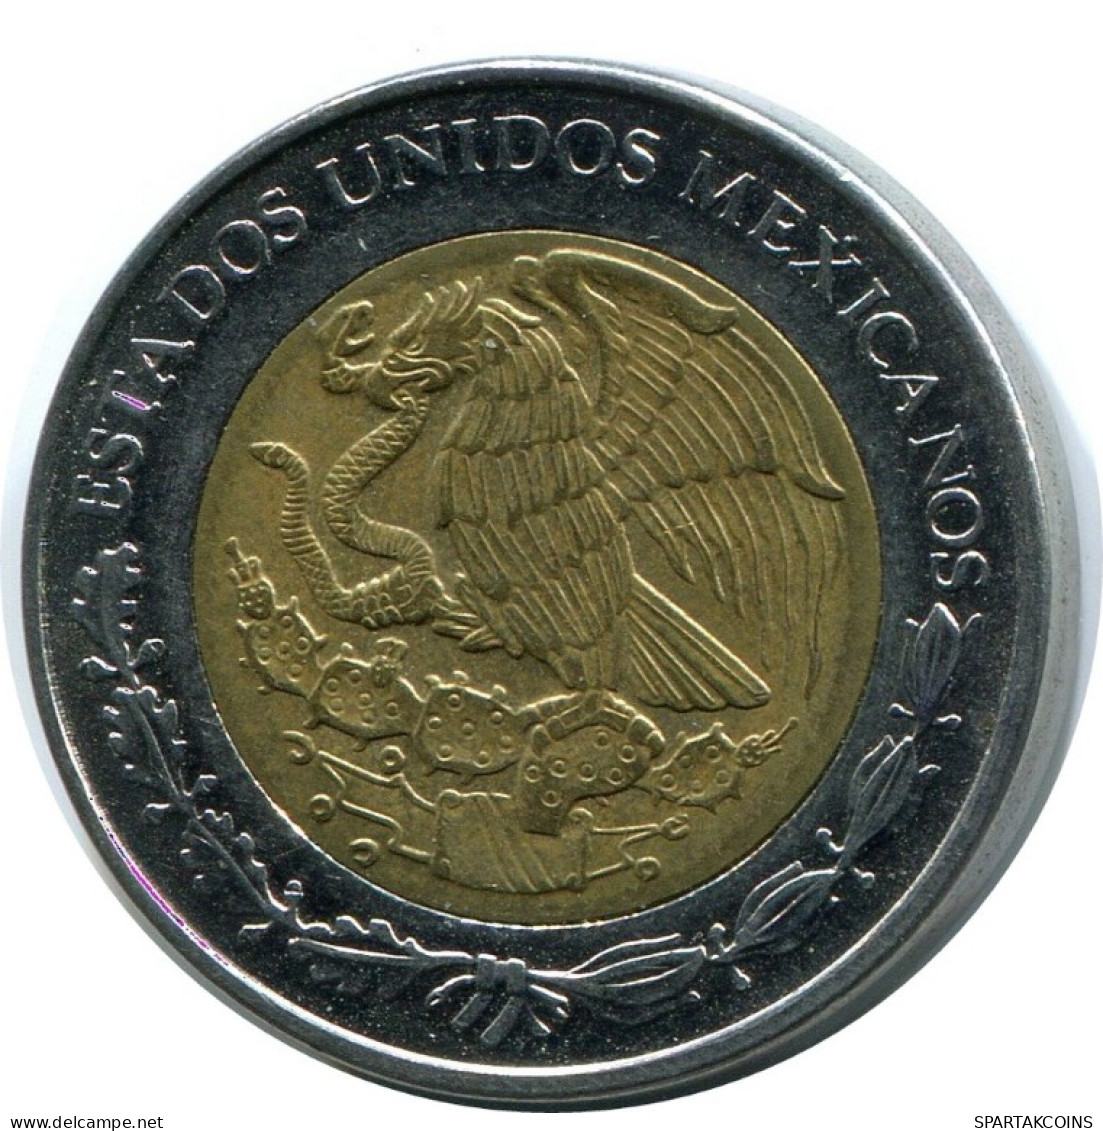 1 PESO 2000 MEXICO Coin #AH501.5.U.A - México